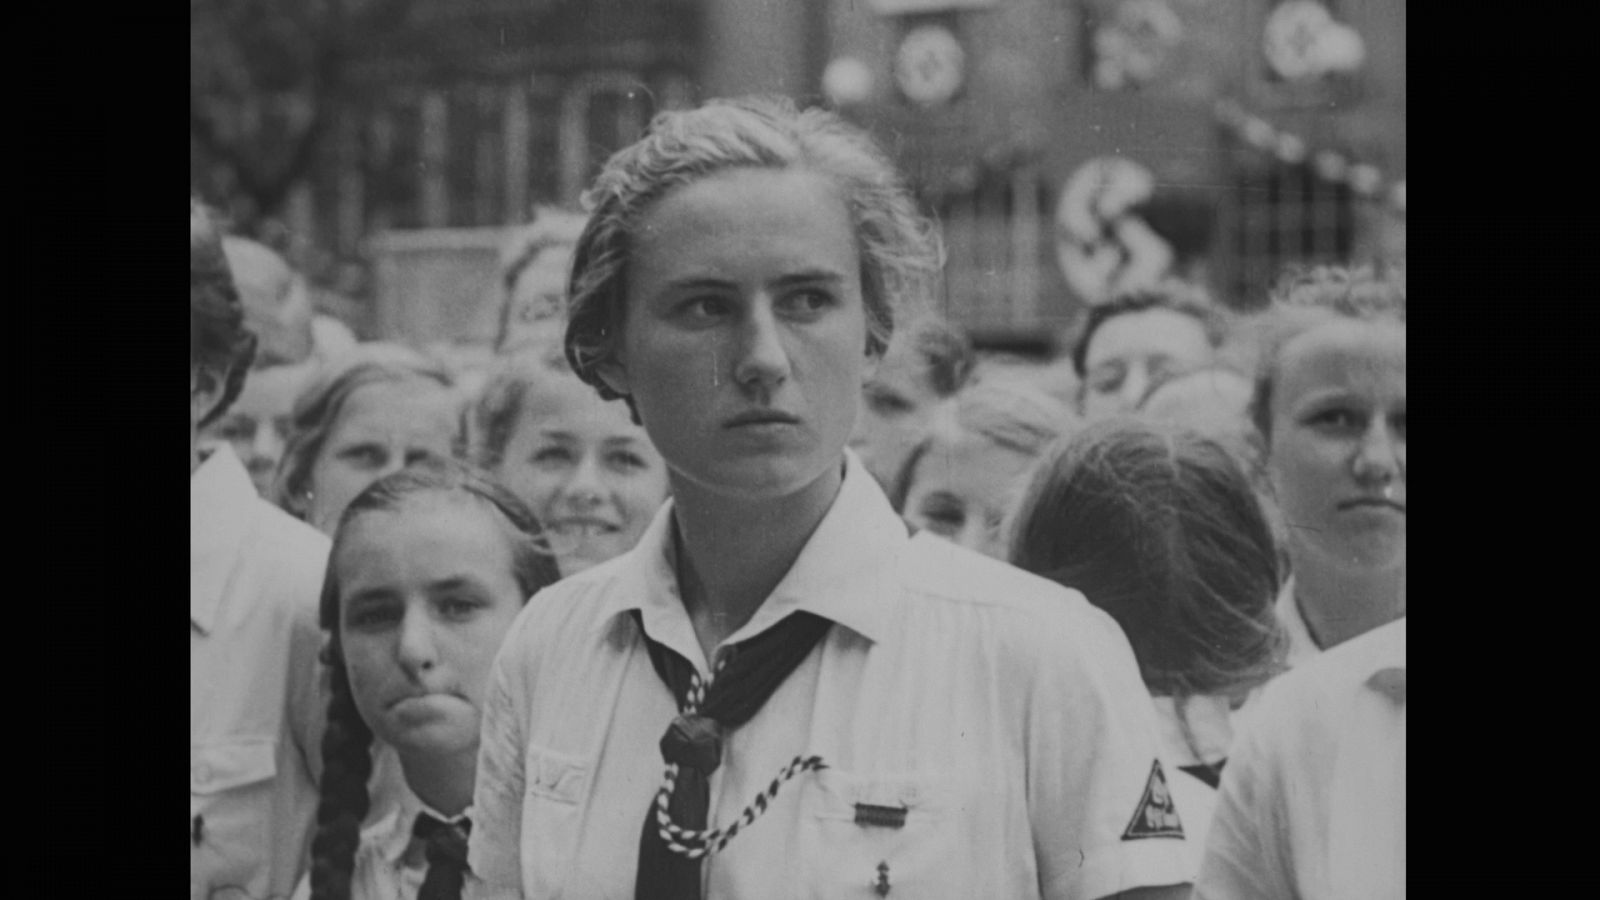 Las mujeres en el proyecto nazi - Episodio 1: La mujer matriz - Documental en RTVE